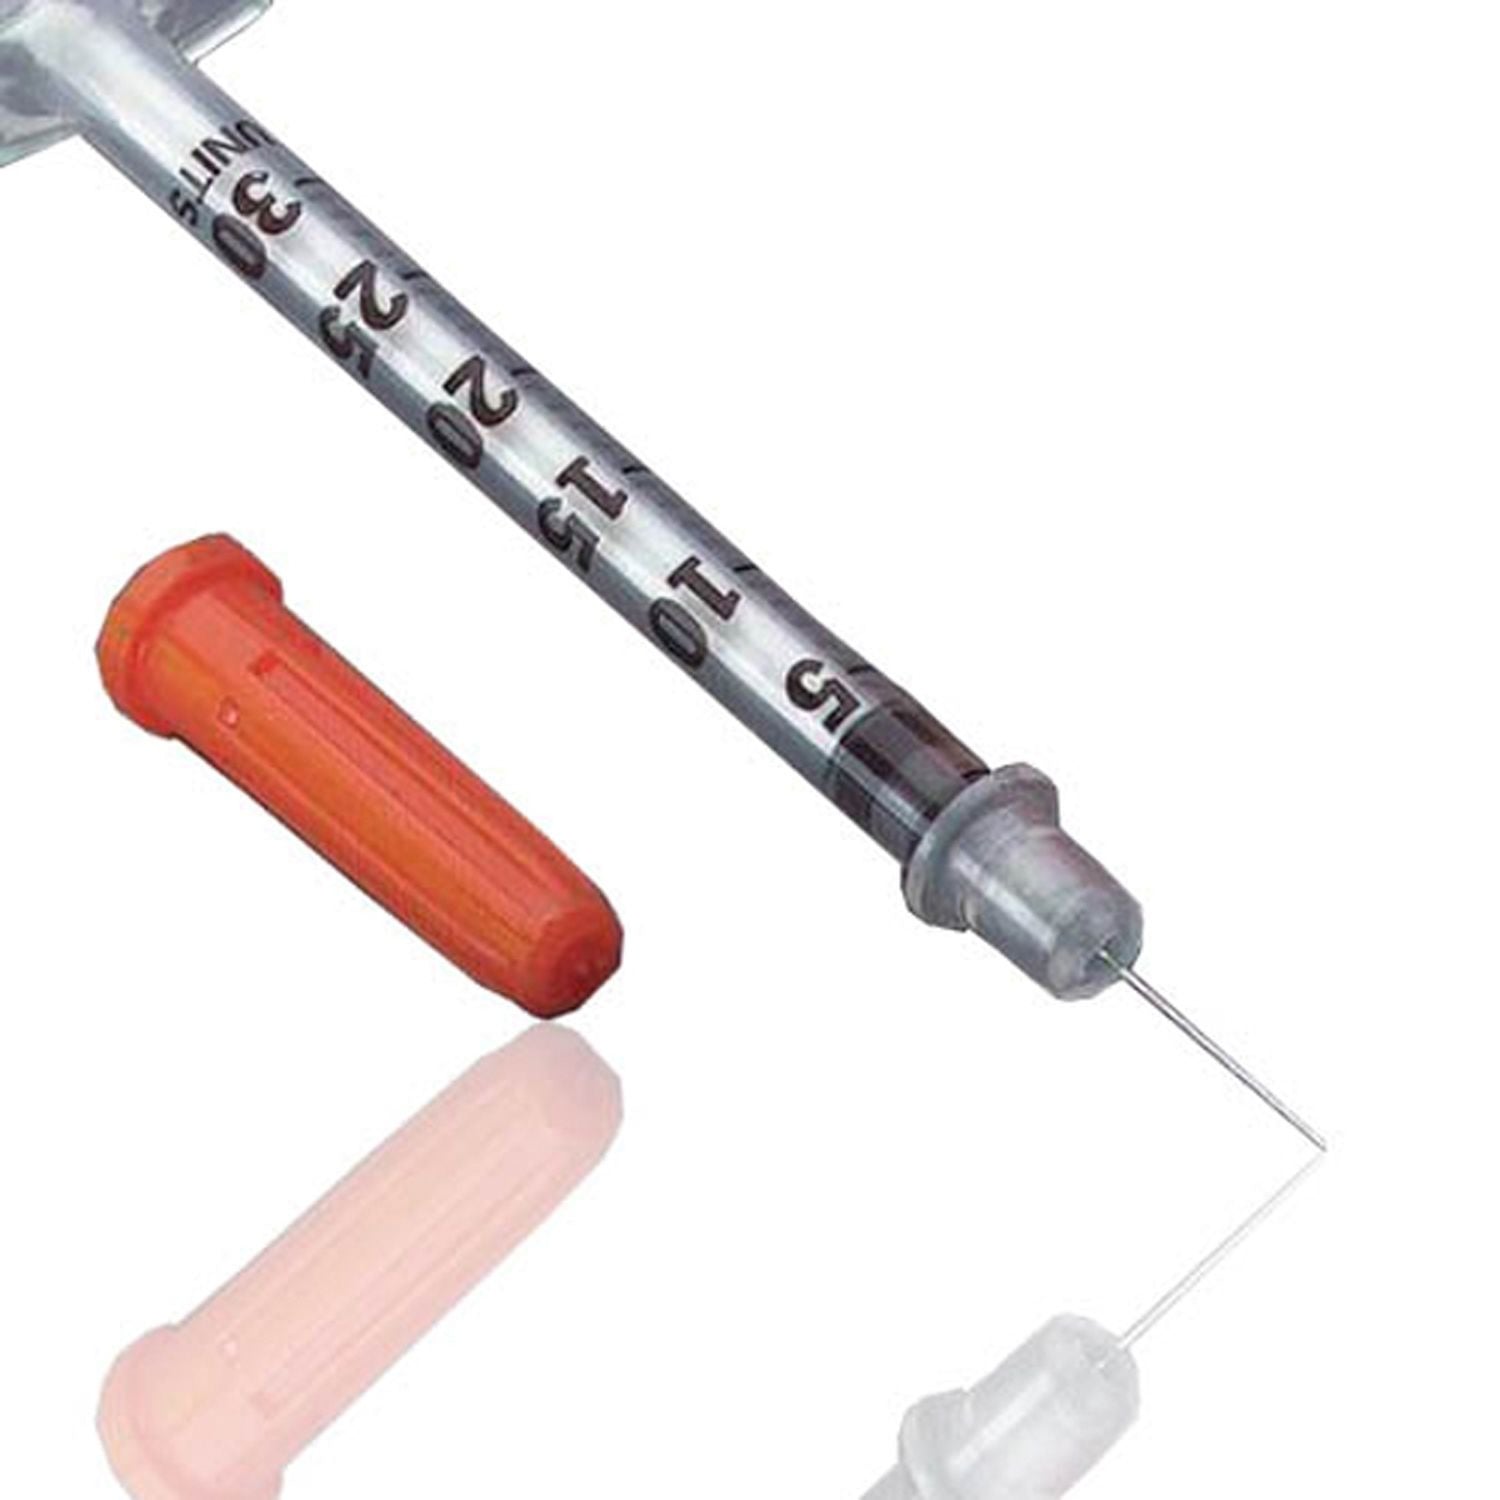 BD Microfine Insulin Syringe | 30G x 0.5ml | Short | Pack of 100 (1)